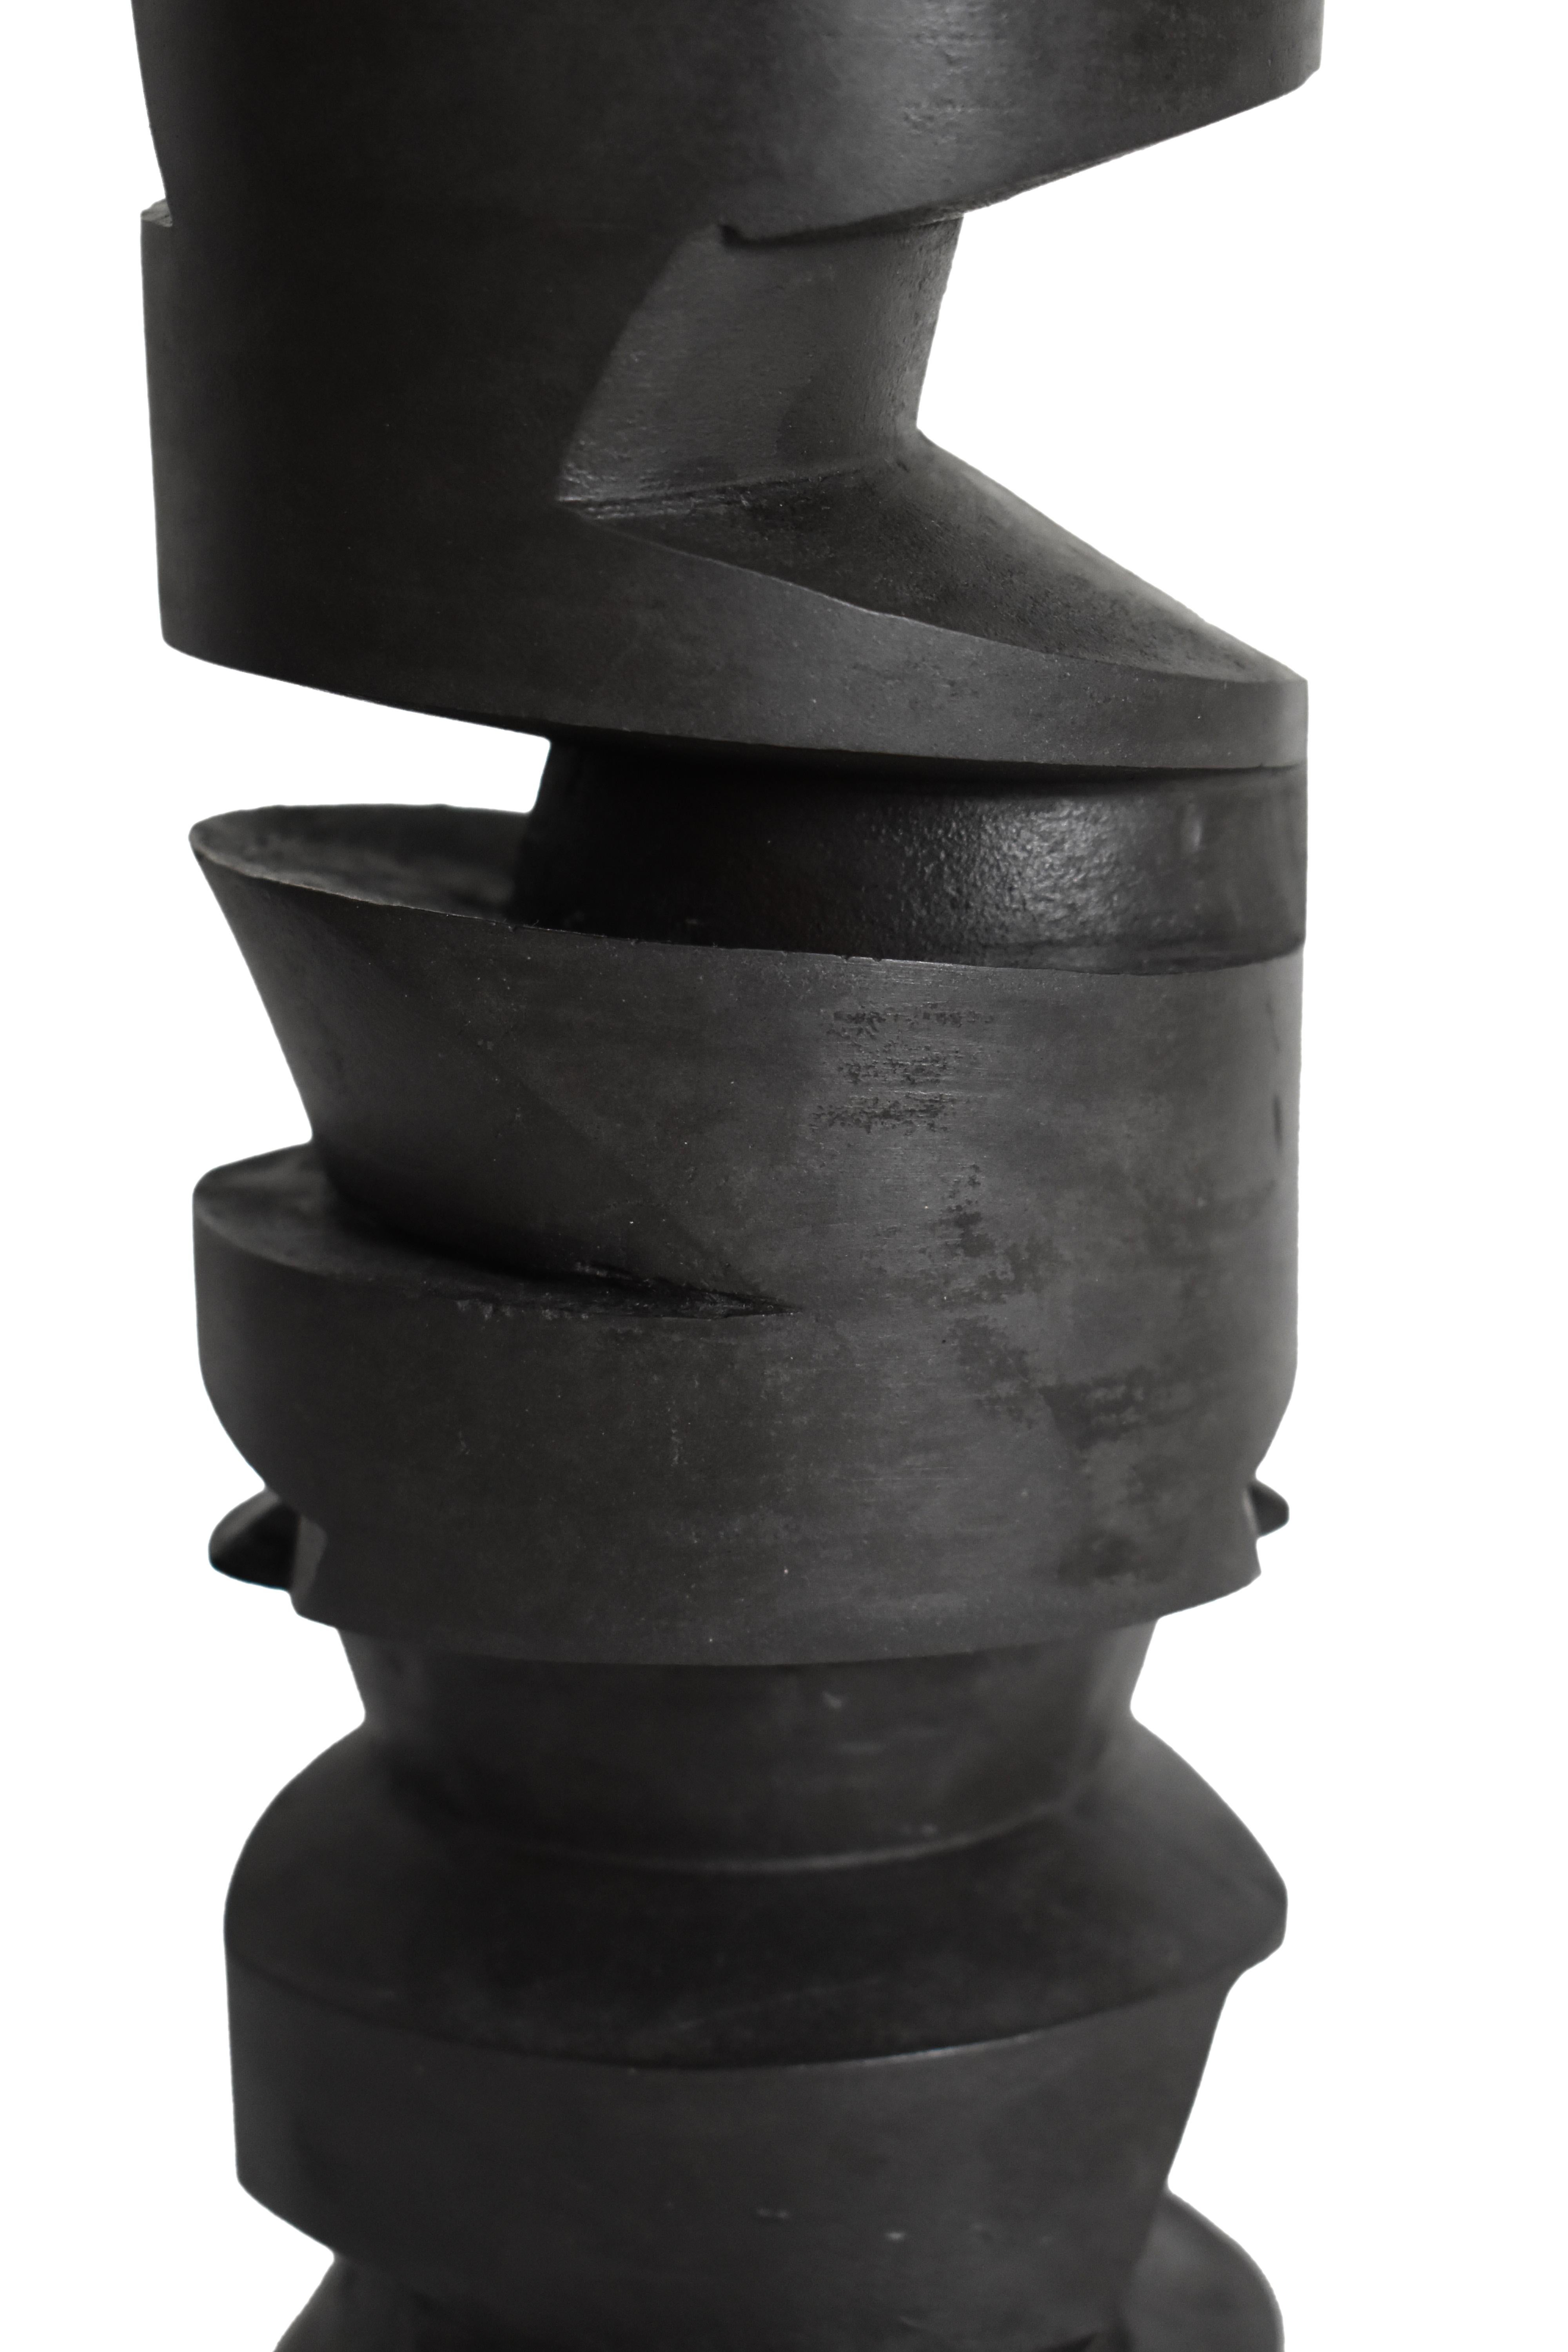 Samuel Latour - Duplicité - Original Ceramic Sculpture 2